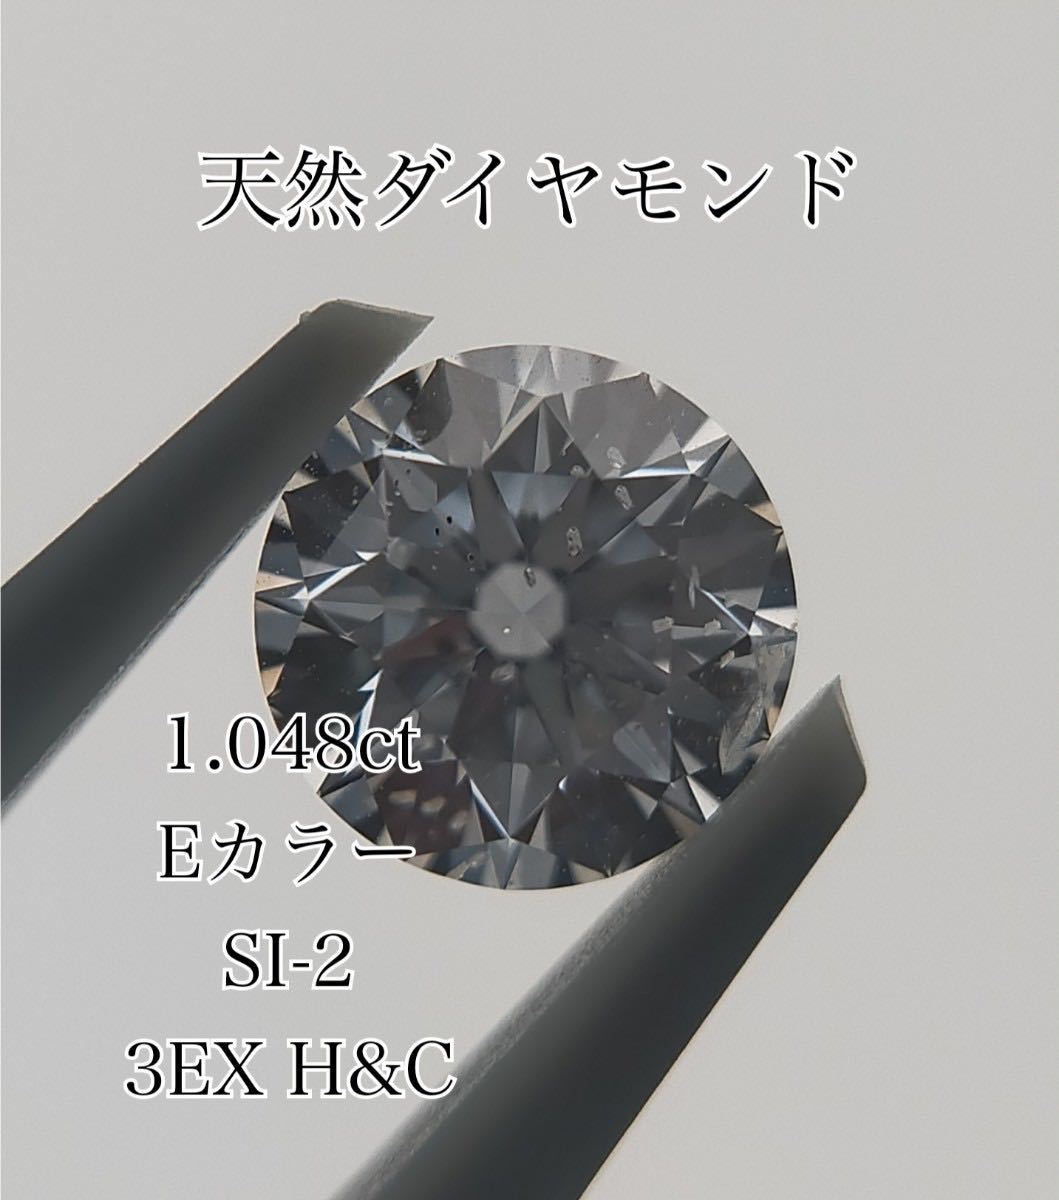 天然ダイヤモンド 1.048ct E SI2 3EXCELLENT H&C ルース CGL ソーティング付き ダイヤルース ハートアンドキューピッド 大粒 1ct 1カラット